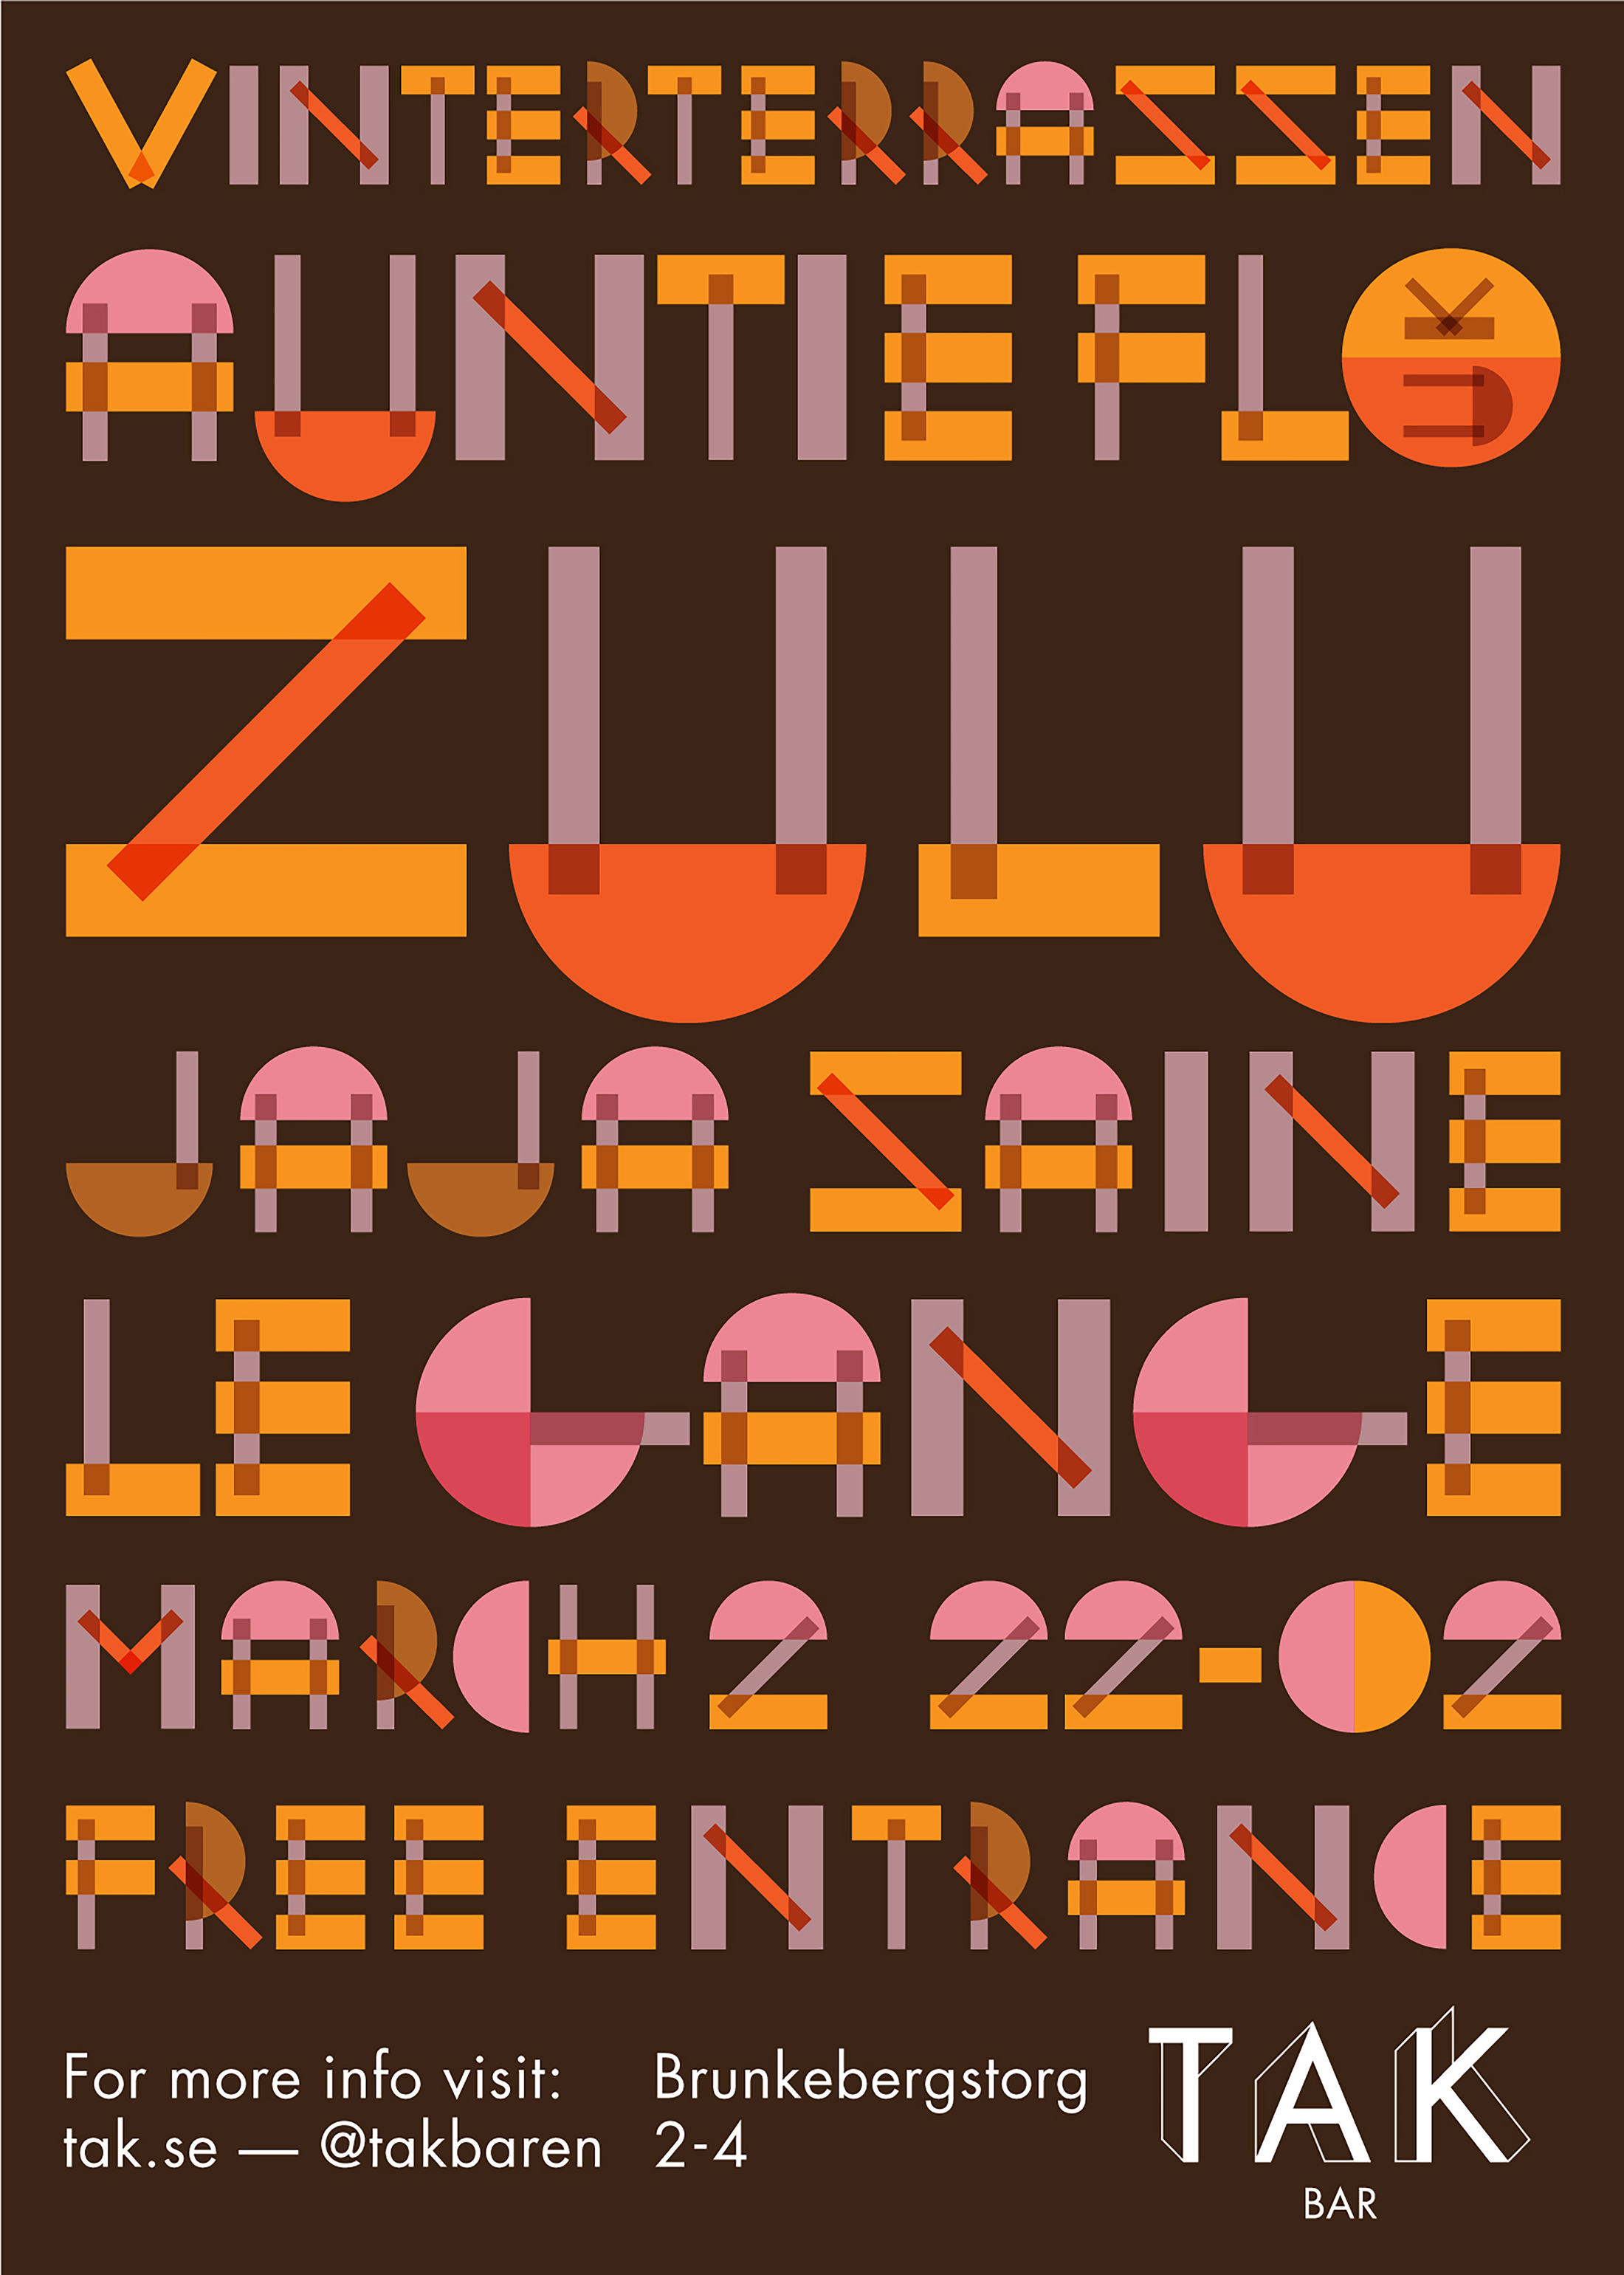 Behind the Amusement Park – Zulu poster